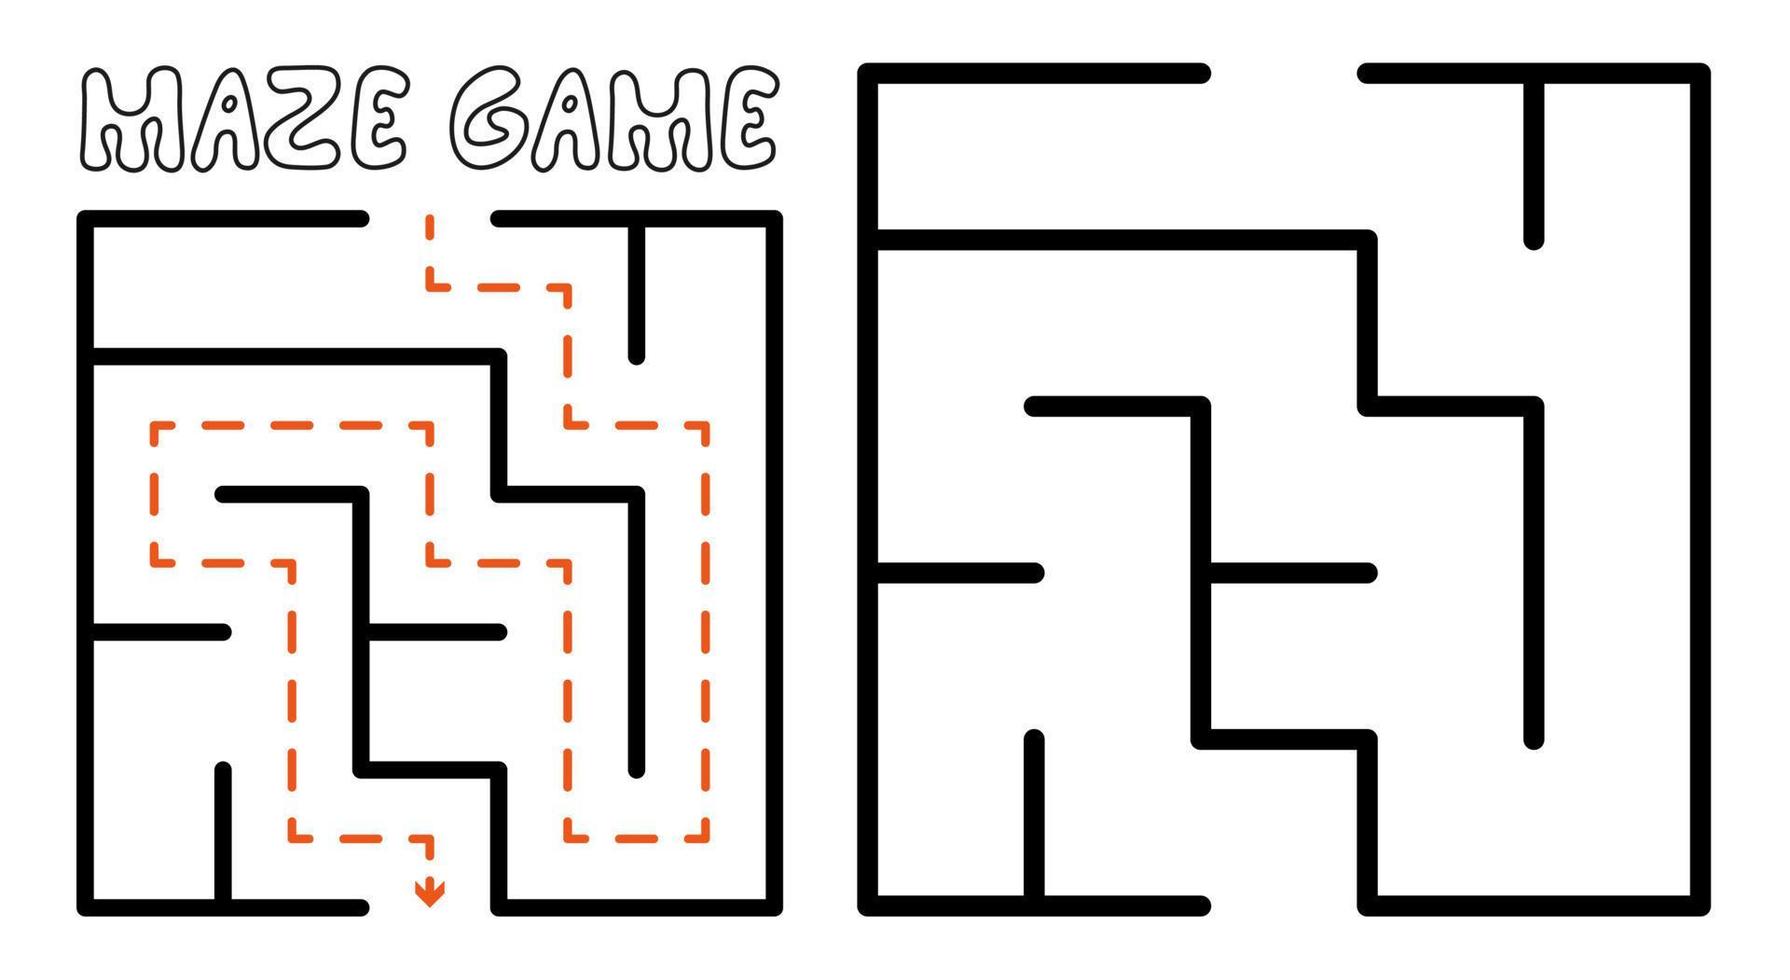 jogo de labirinto para crianças. quebra-cabeça de labirinto simples com solução vetor